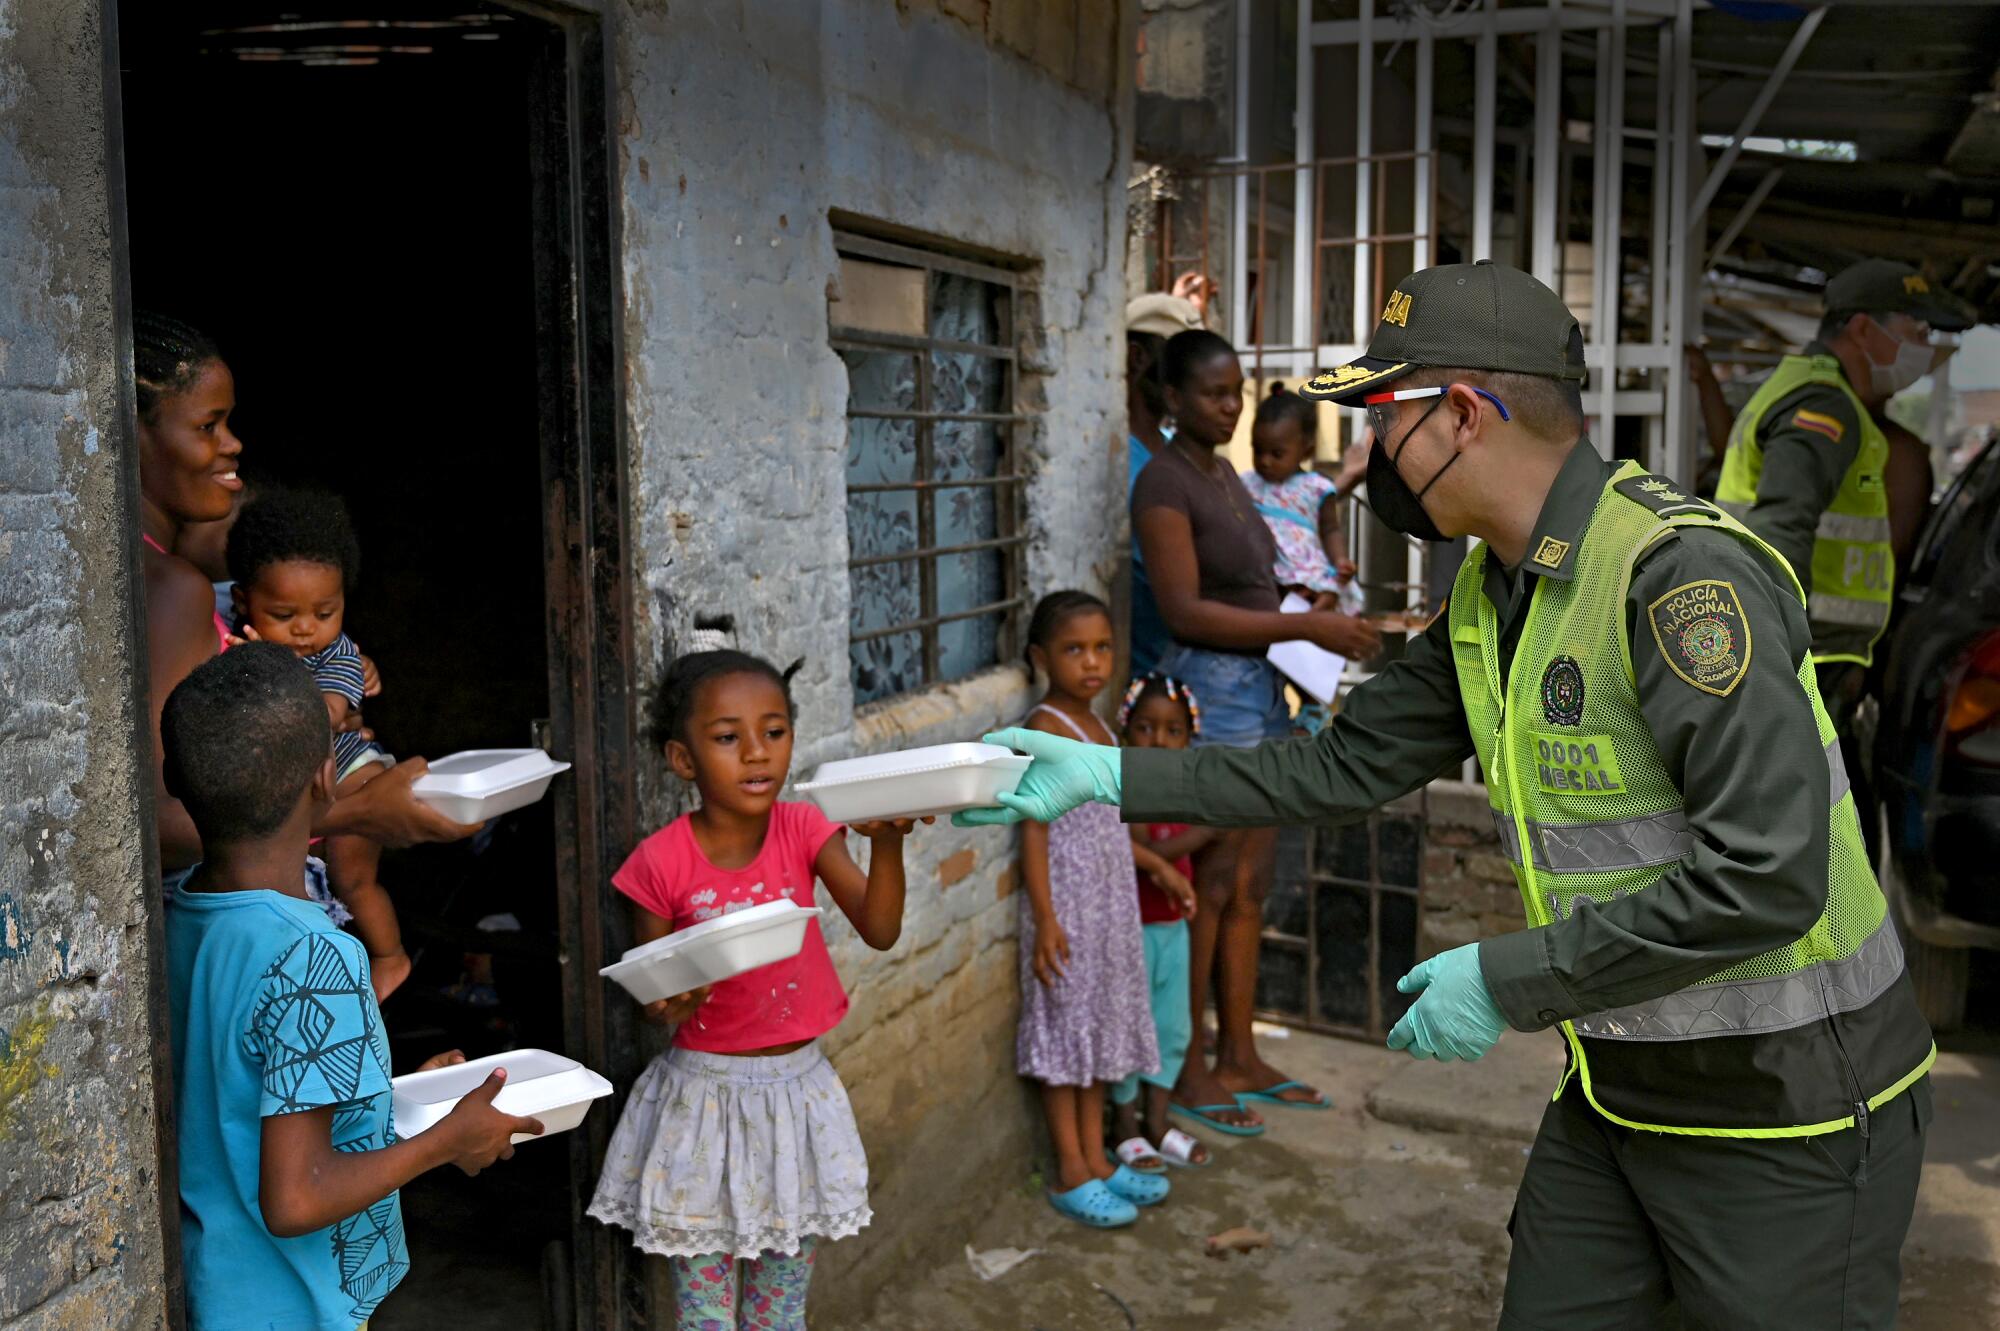 El jefe de policía Manuel Vásquez, a la derecha, entrega almuerzos a una familia, el 6 de mayo pasado en el distrito de Aguablanca de Cali, Colombia.